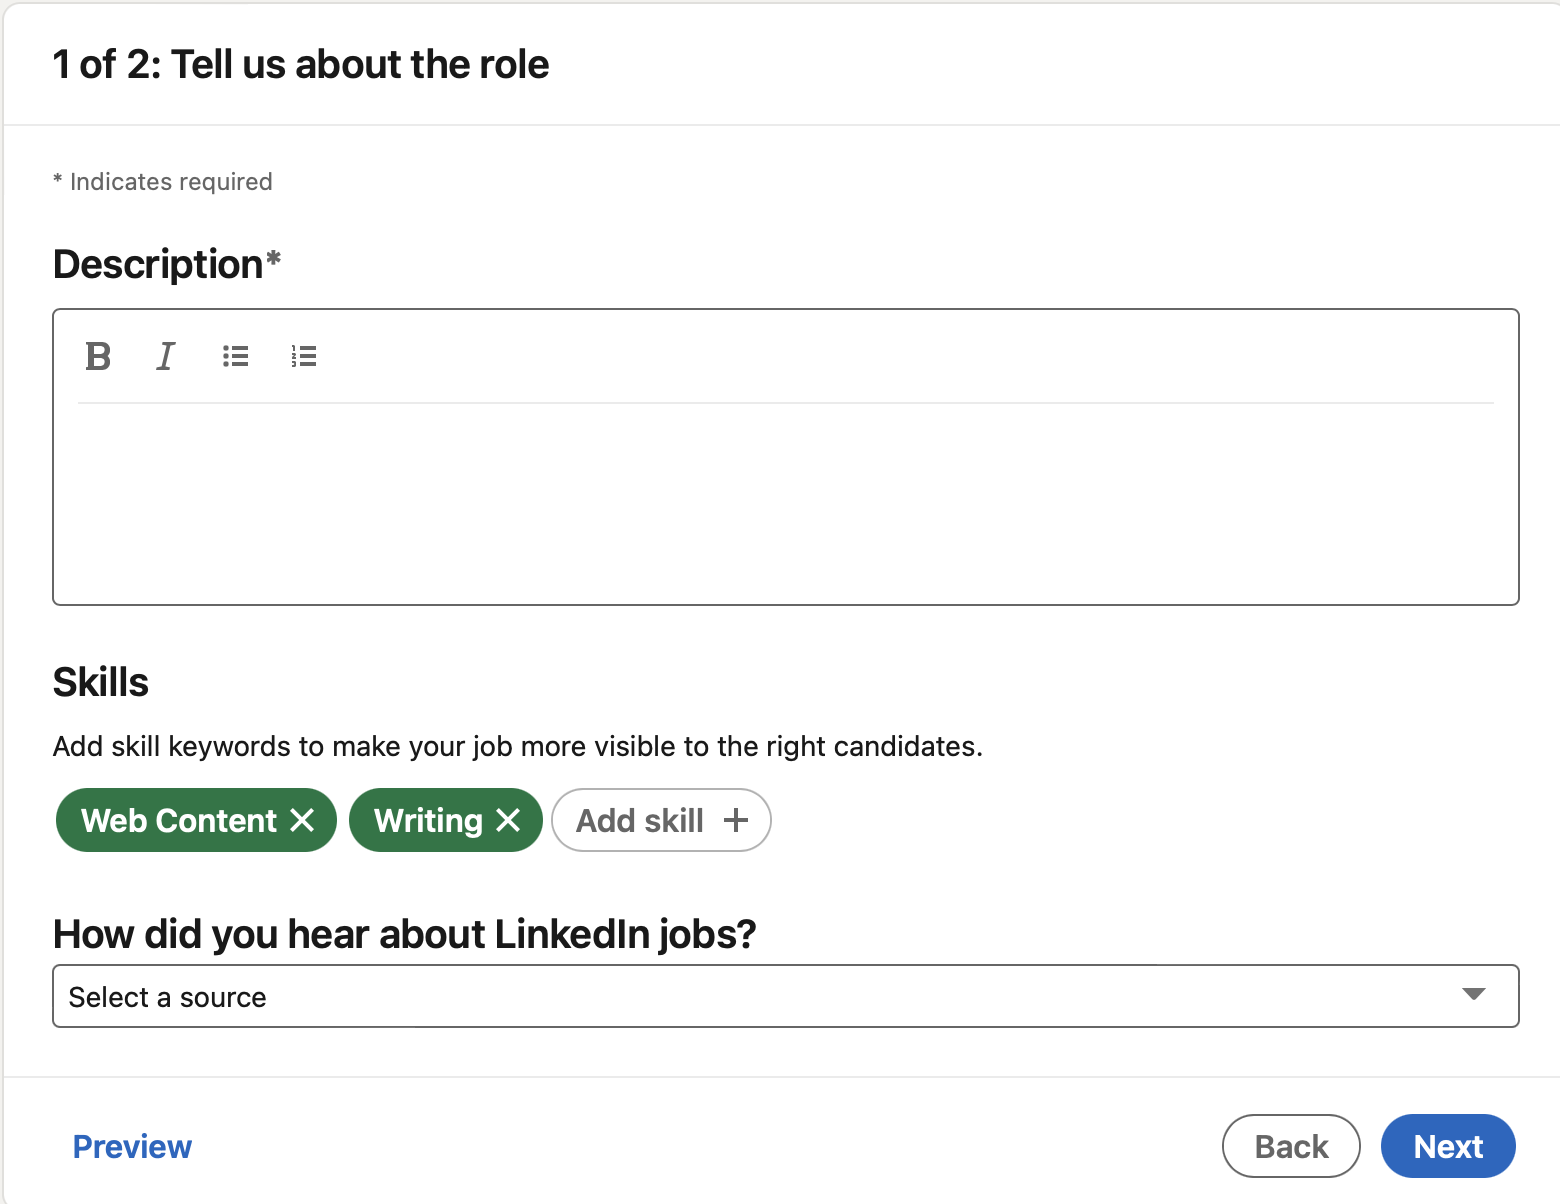 II - LinkedIn Job Form part 2 skills